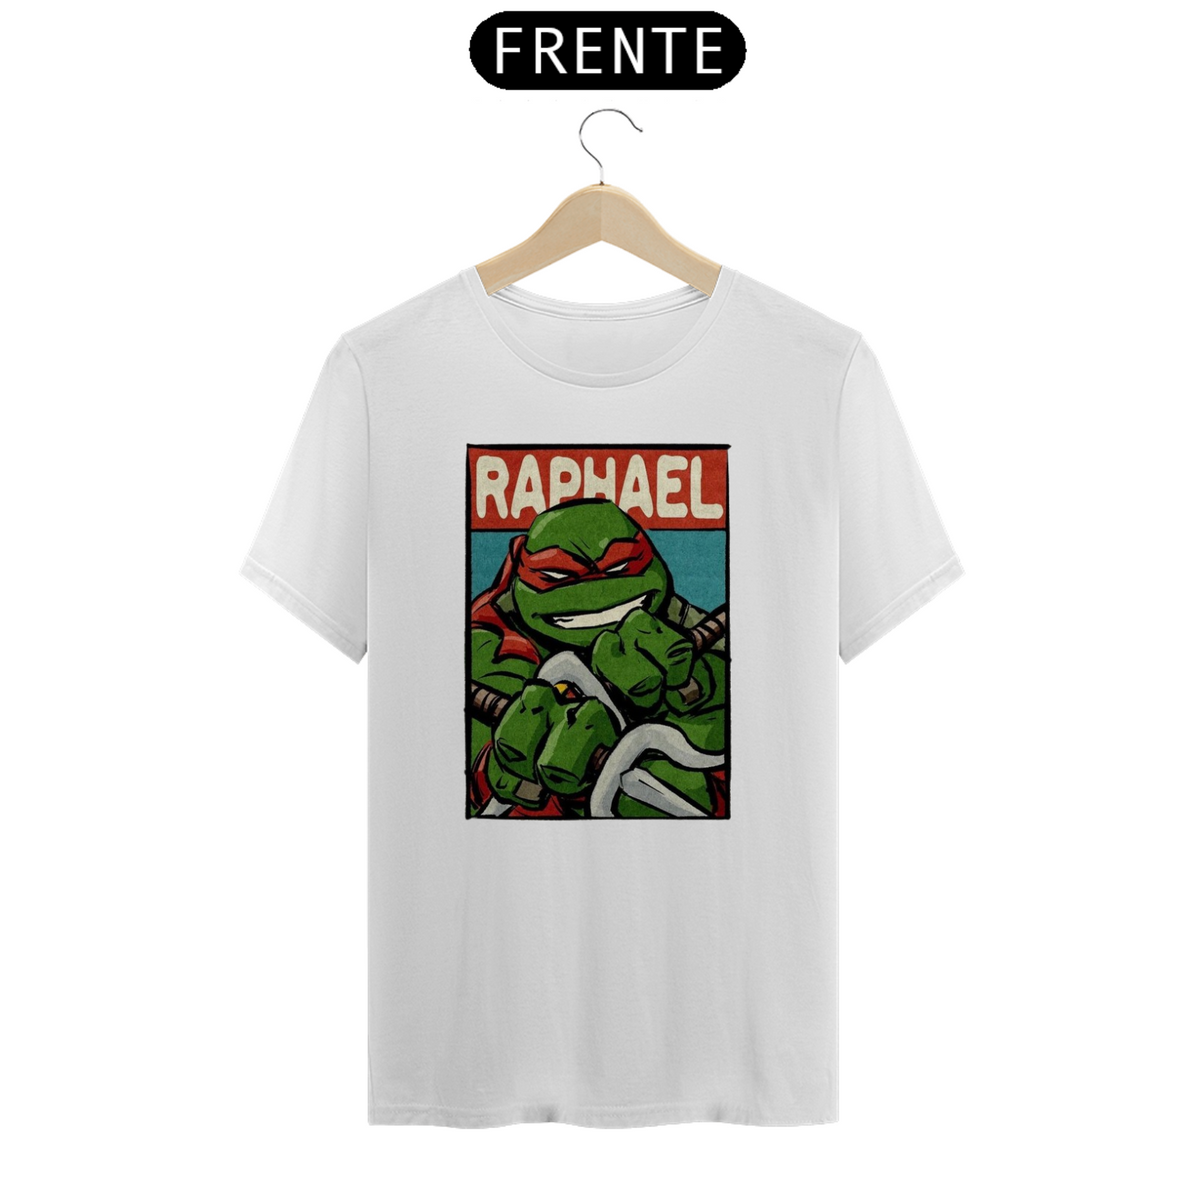 Nome do produto: Raphael